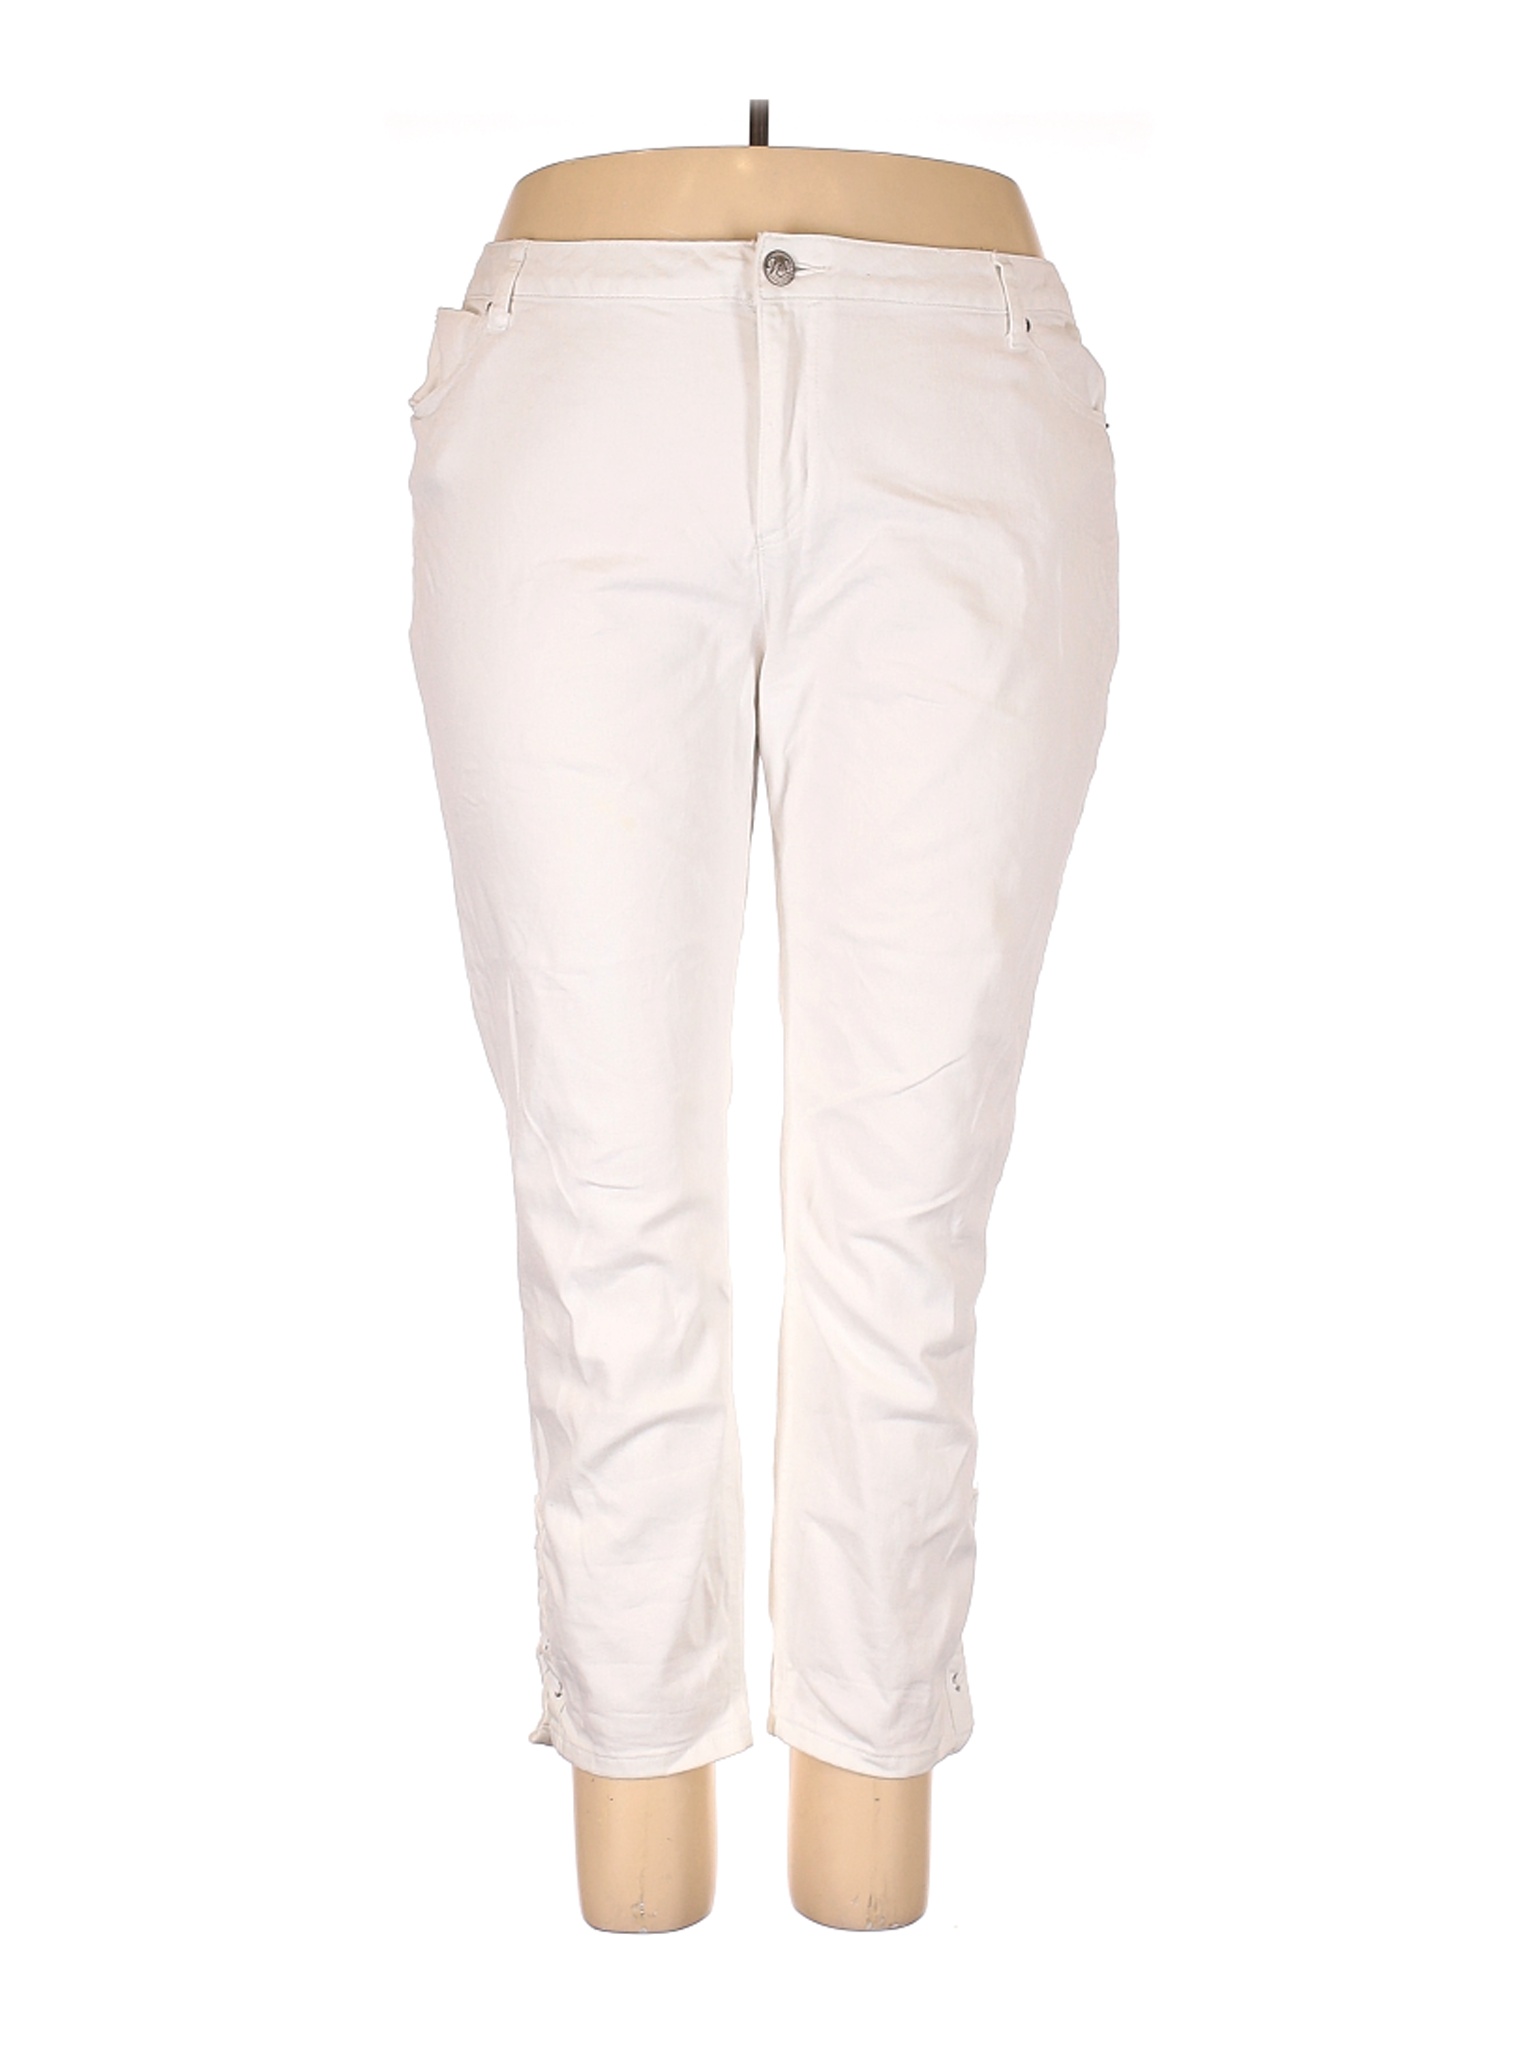 Westport Women Ivory Jeans 20 Plus | eBay